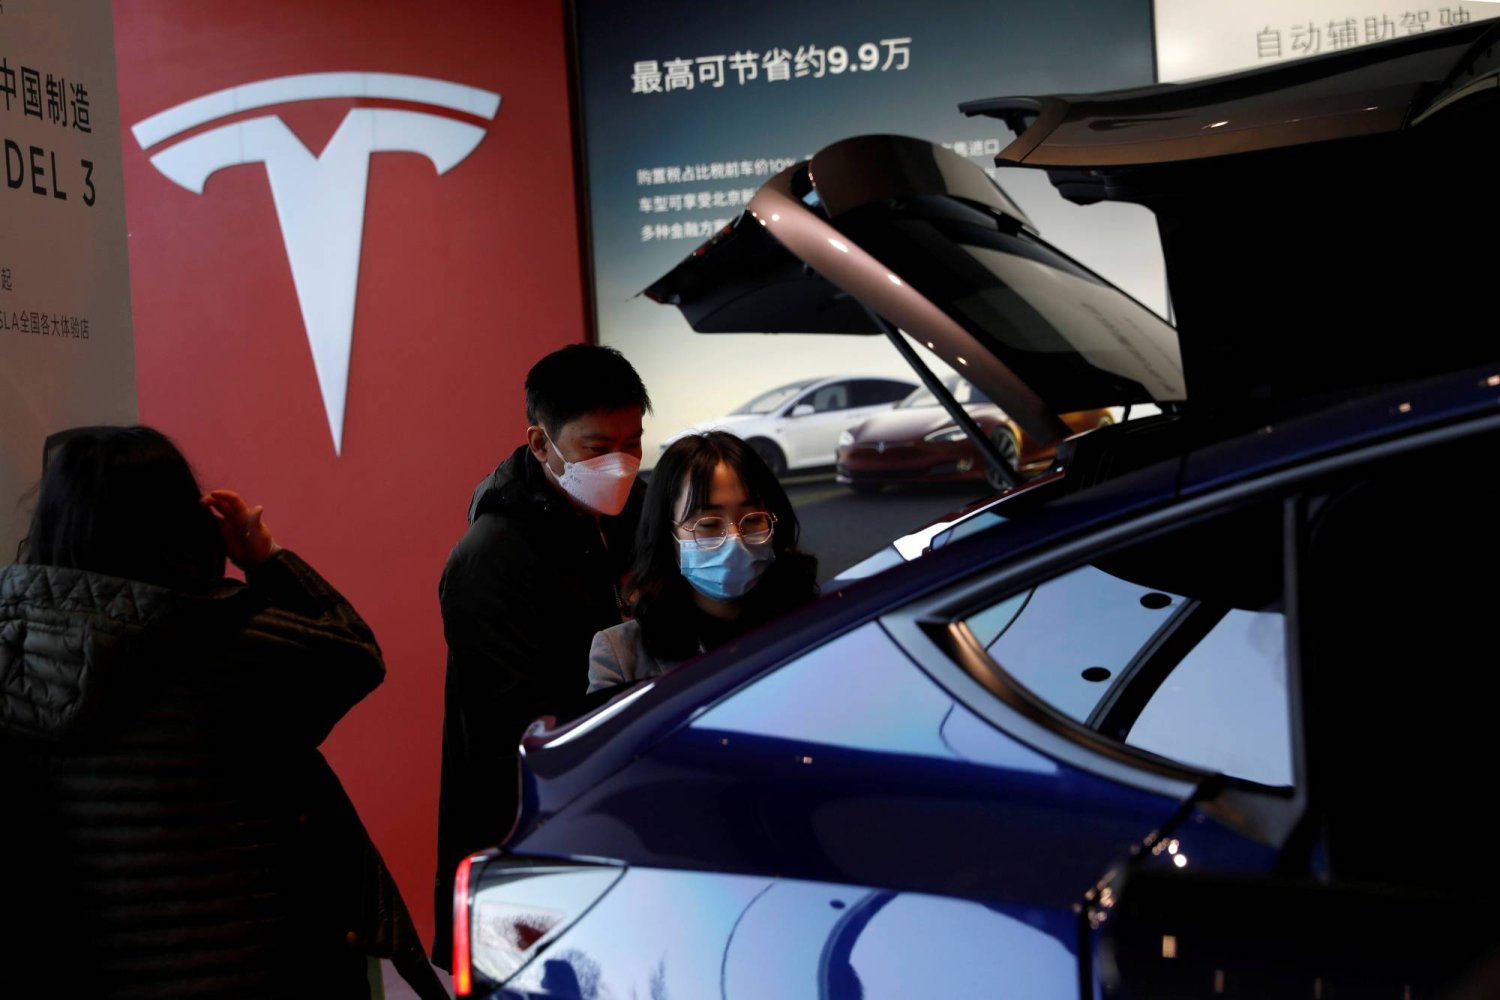 زوار يتفقدون سيارة «تسلا موديل واي» الرياضية متعددة الاستخدامات صينية الصنع في صالة عرض صانع السيارات الكهربائية في بكين (رويترز)